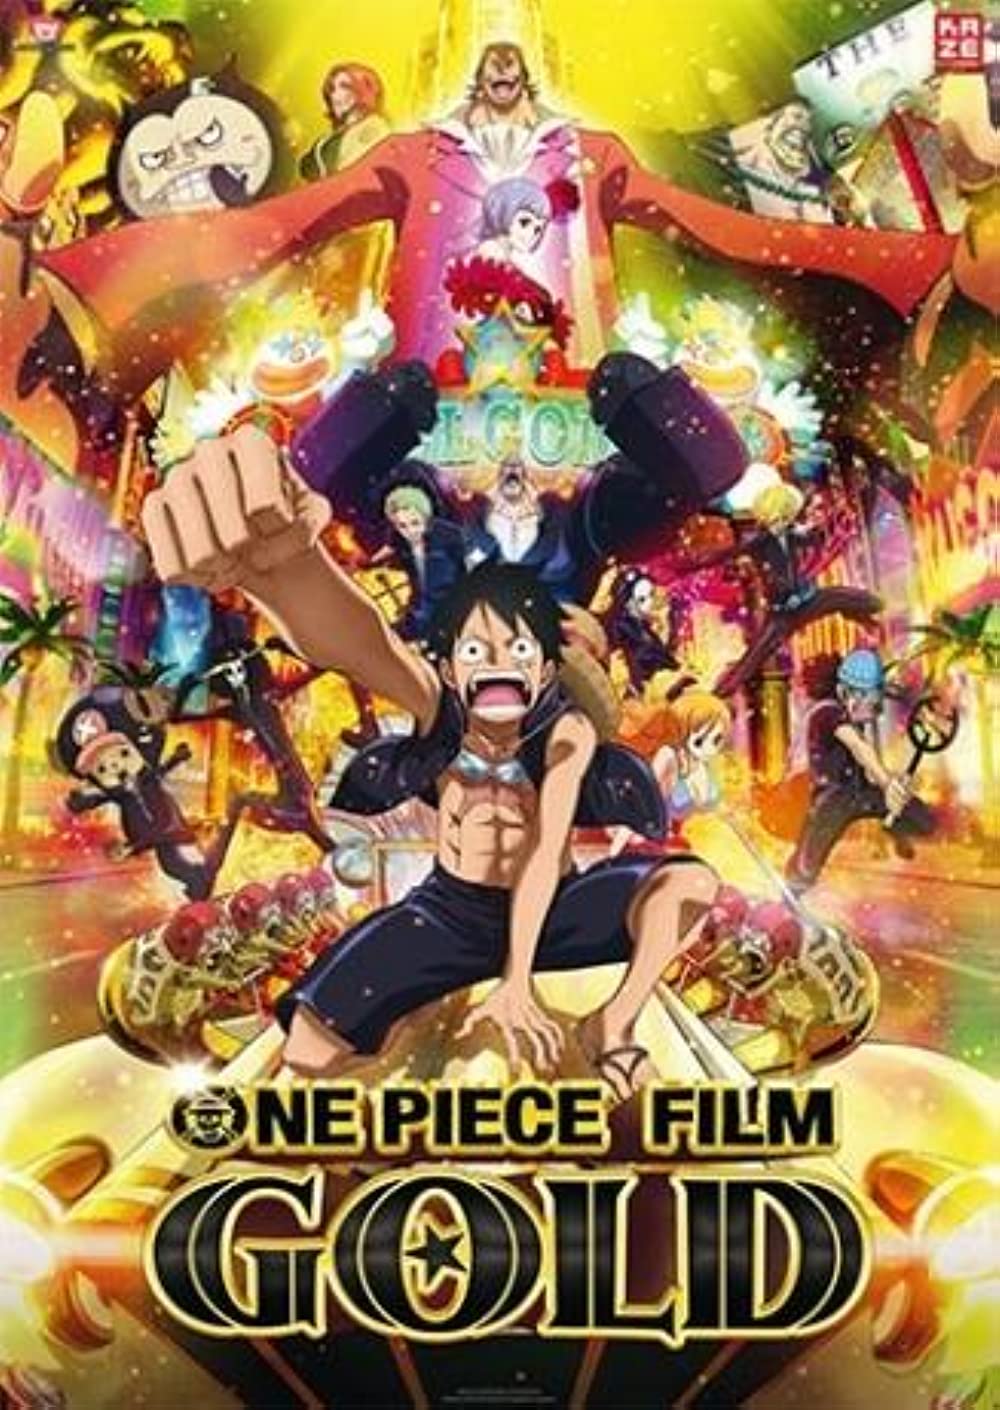 Filmbeschreibung zu One Piece Film: Gold